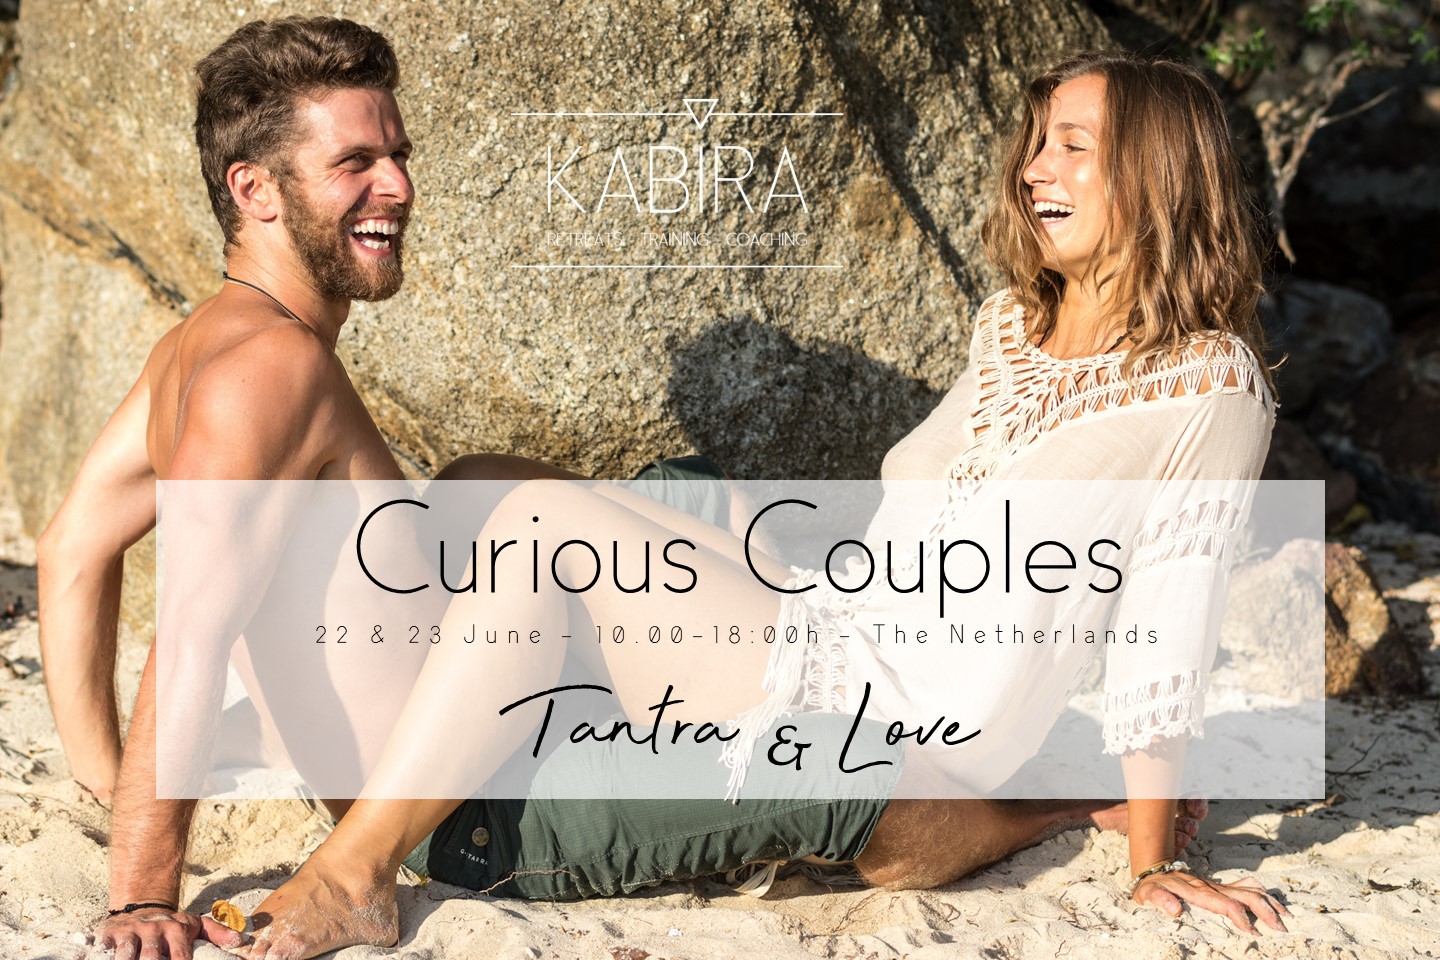 Tantric awakening couples Sacred Tantric